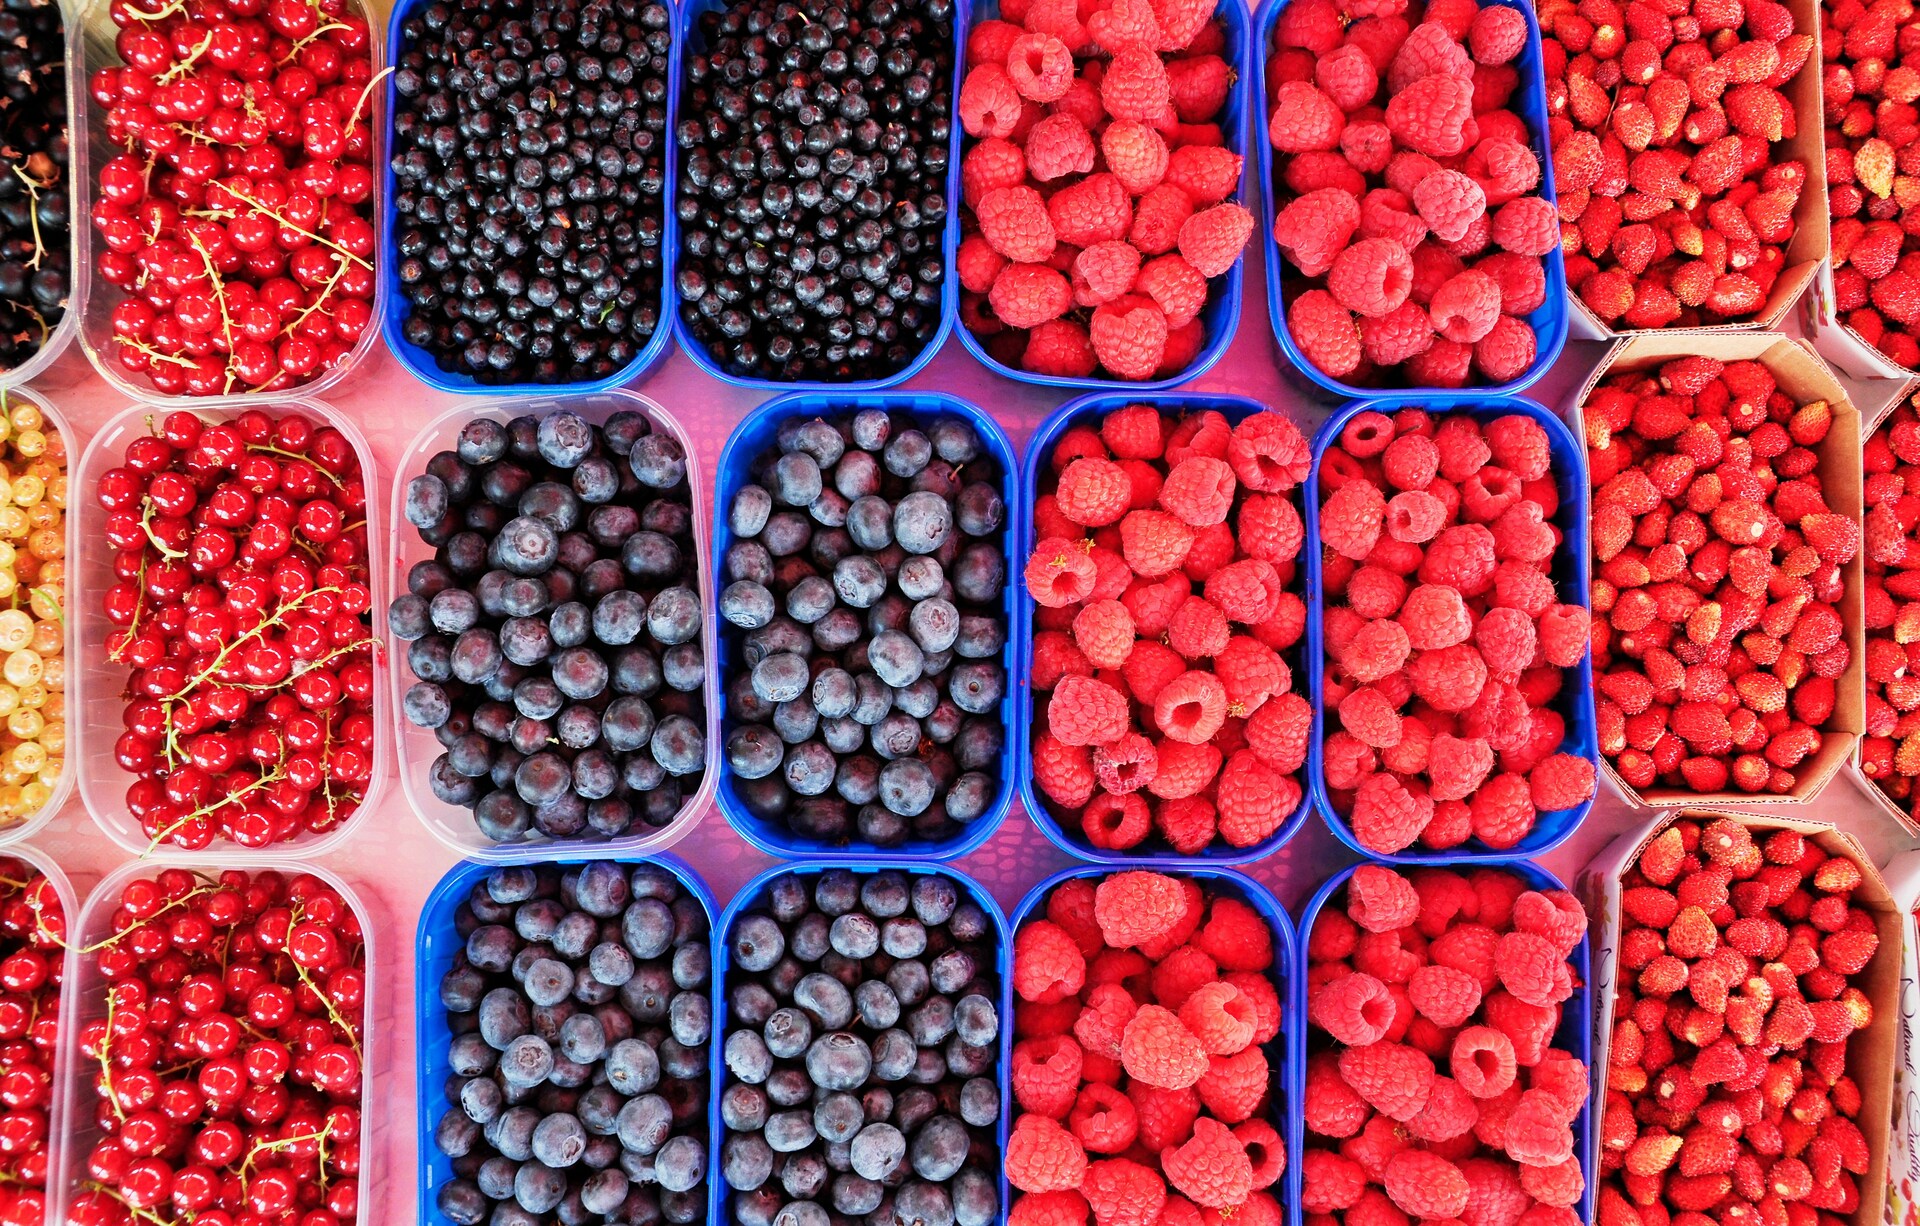 Эксперт Козий: ягоды и все производные от них продукты могут подорожать до 50%